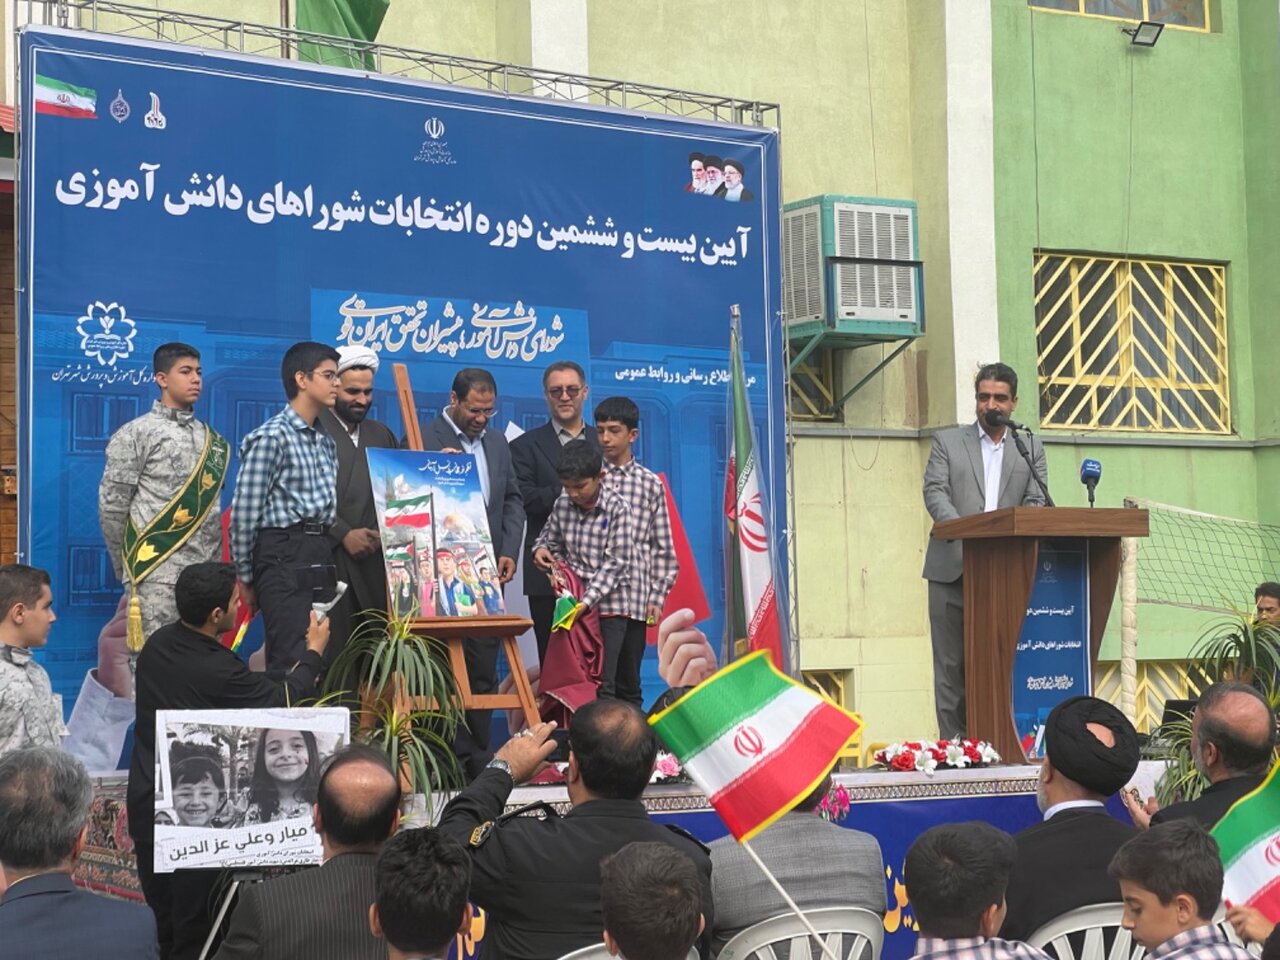 افتخار کودکان ایران، ساختن کشور از دوران دانش اموزی است